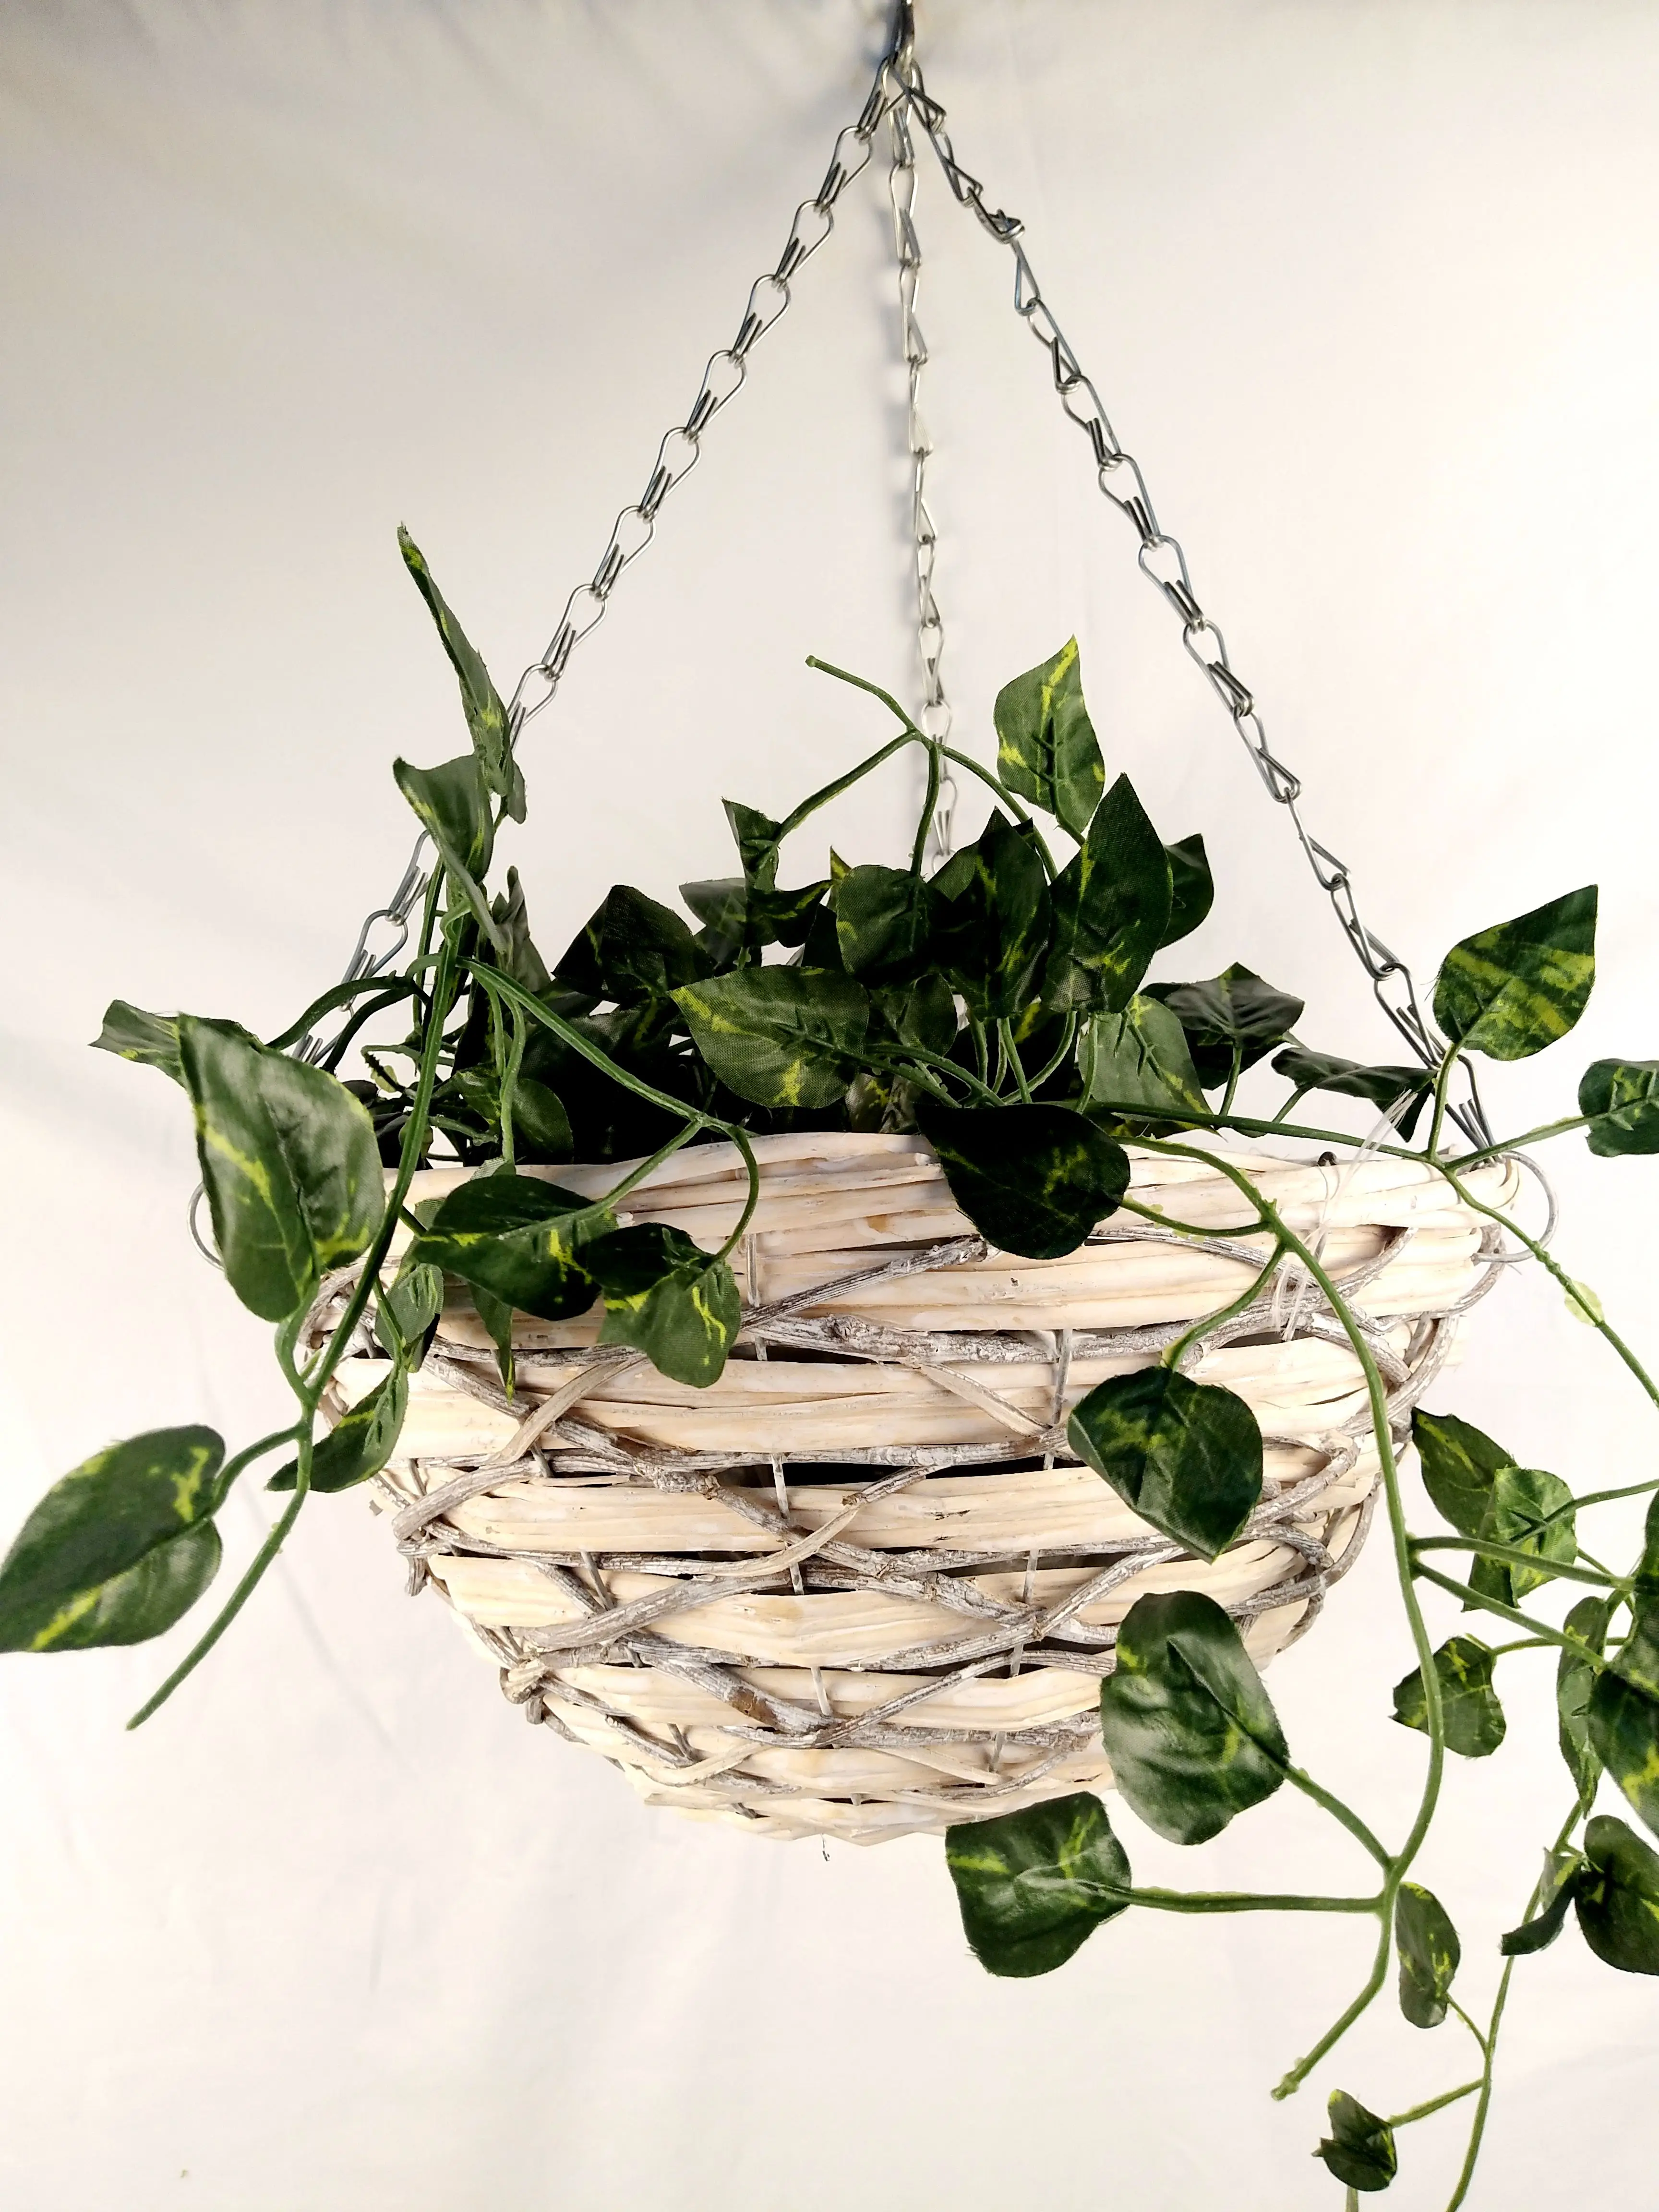 
Hot Sale Wholesale Flower Pot Hanging Planter Basket Rattan Wicker Weaving Outdoor Indoor Home balcony decoration 